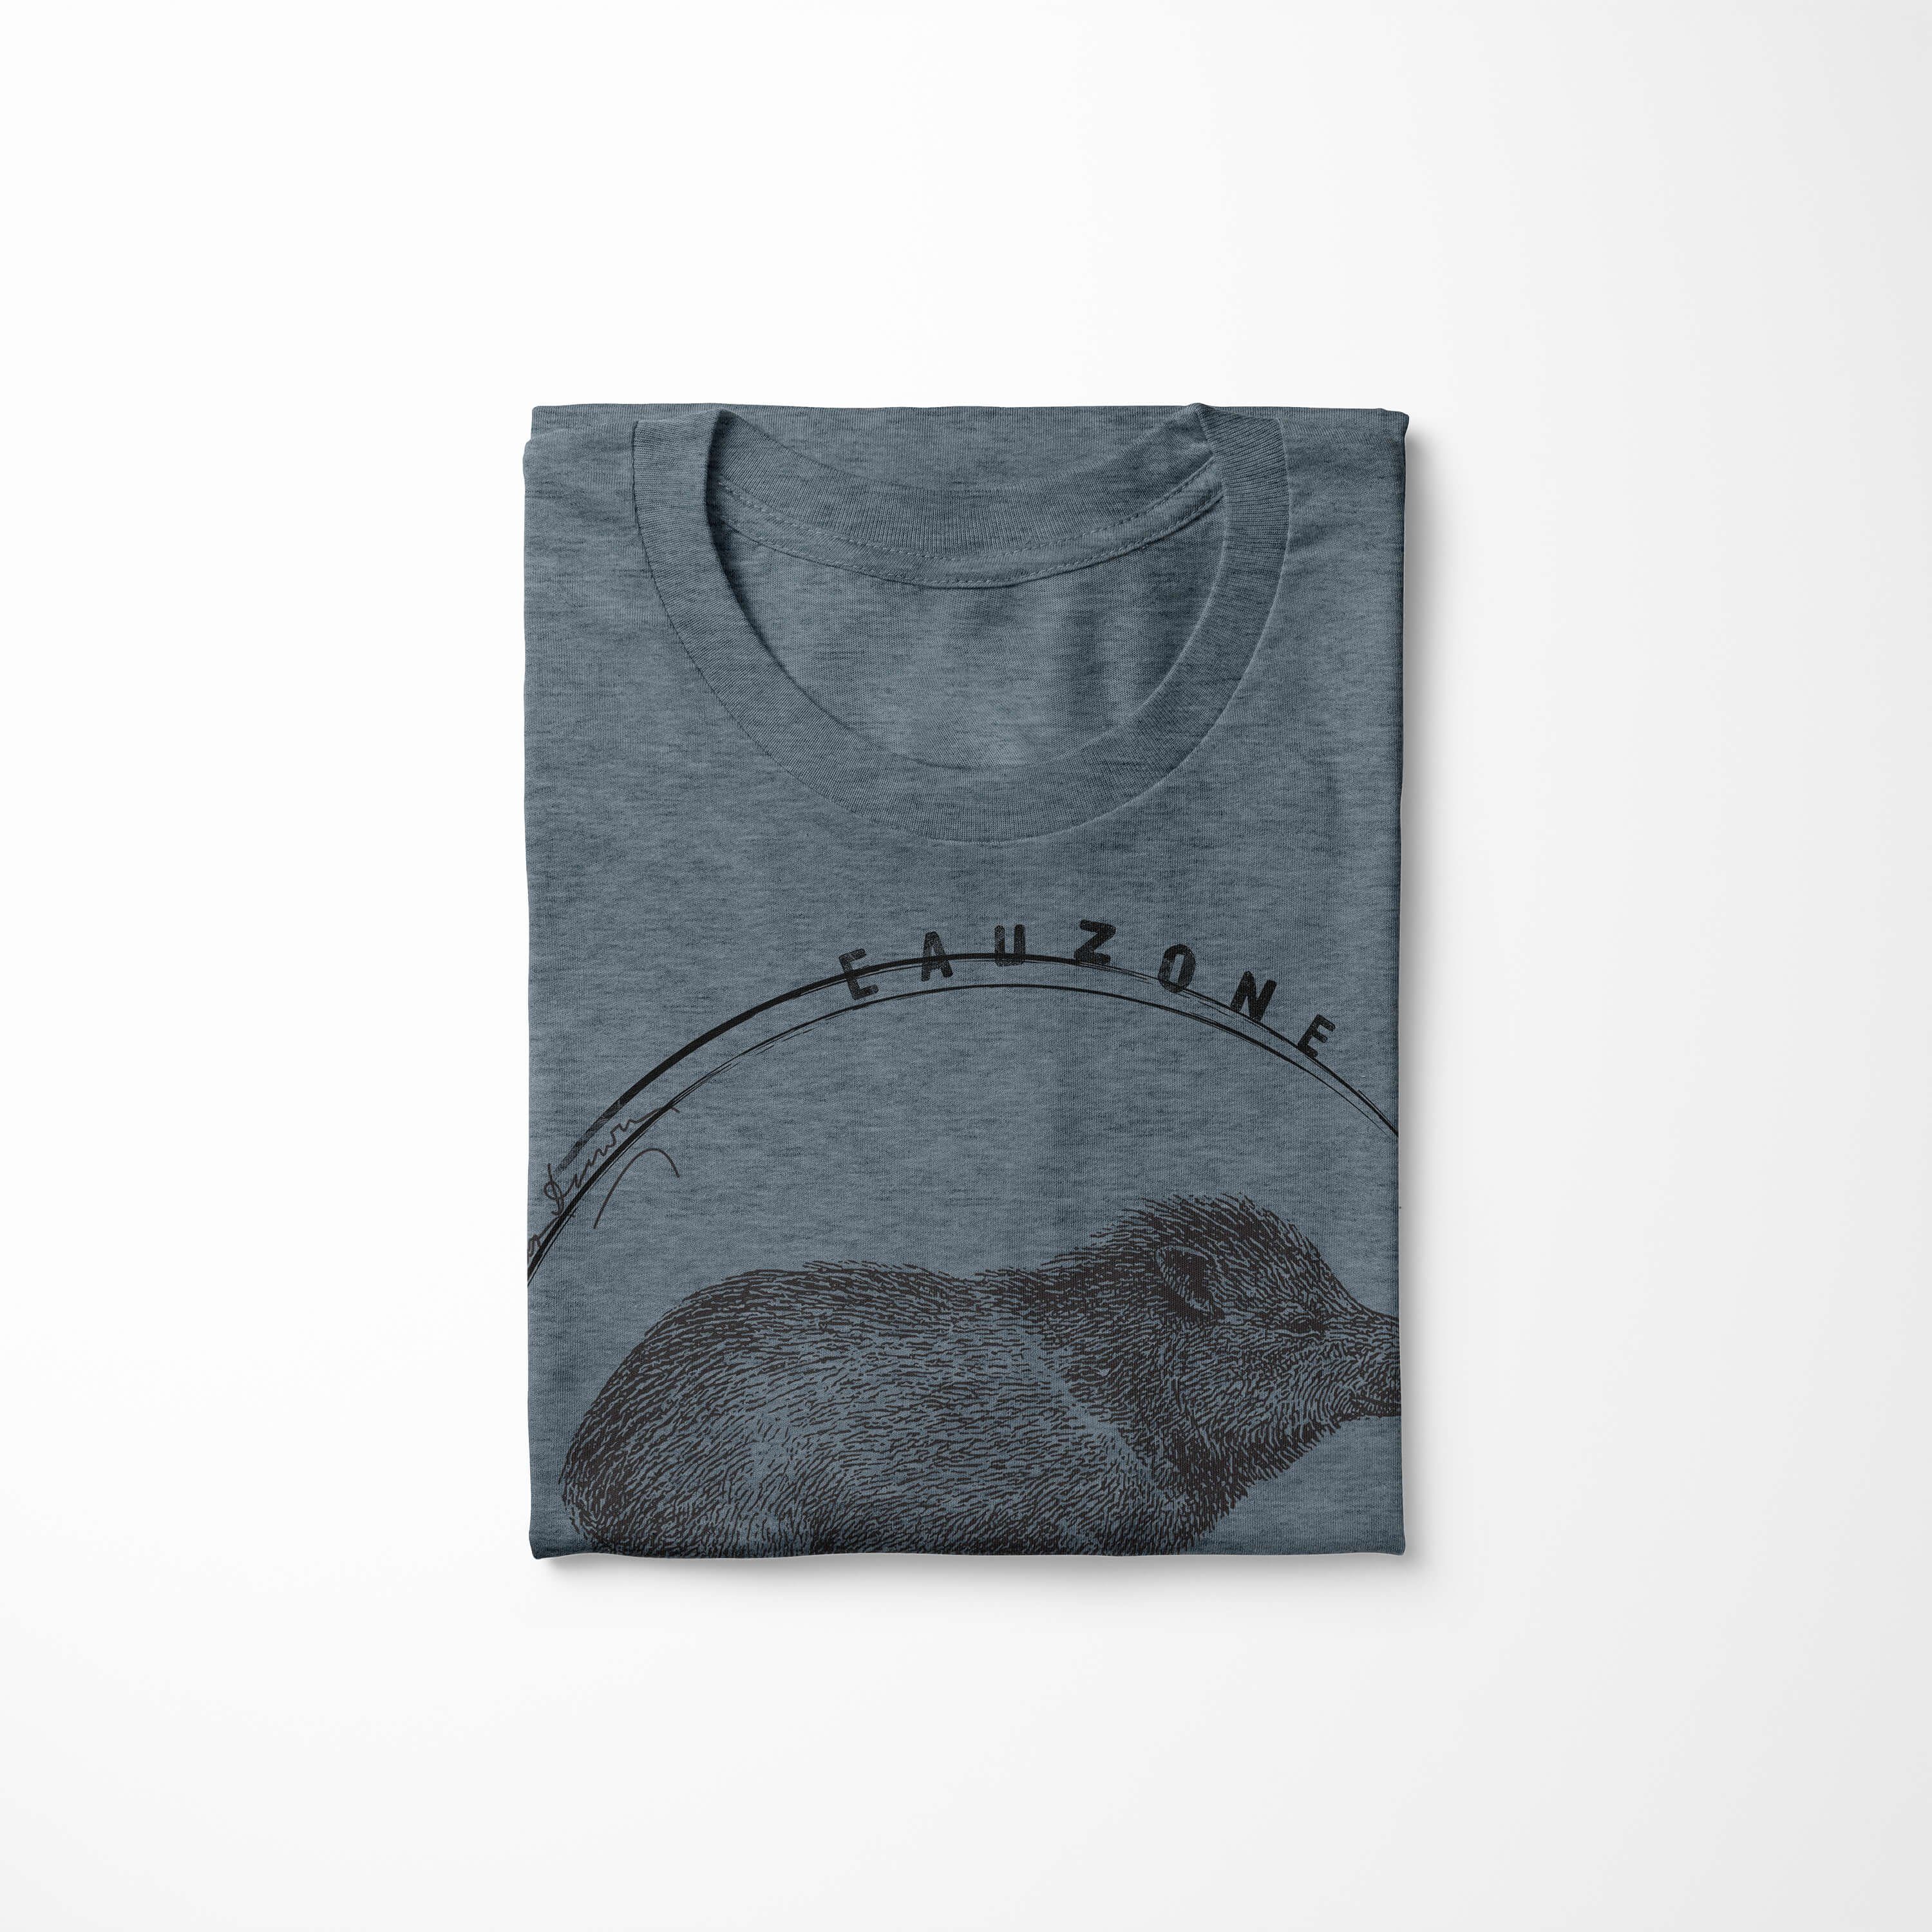 Wildschwein Indigo Evolution Sinus T-Shirt T-Shirt Art Herren